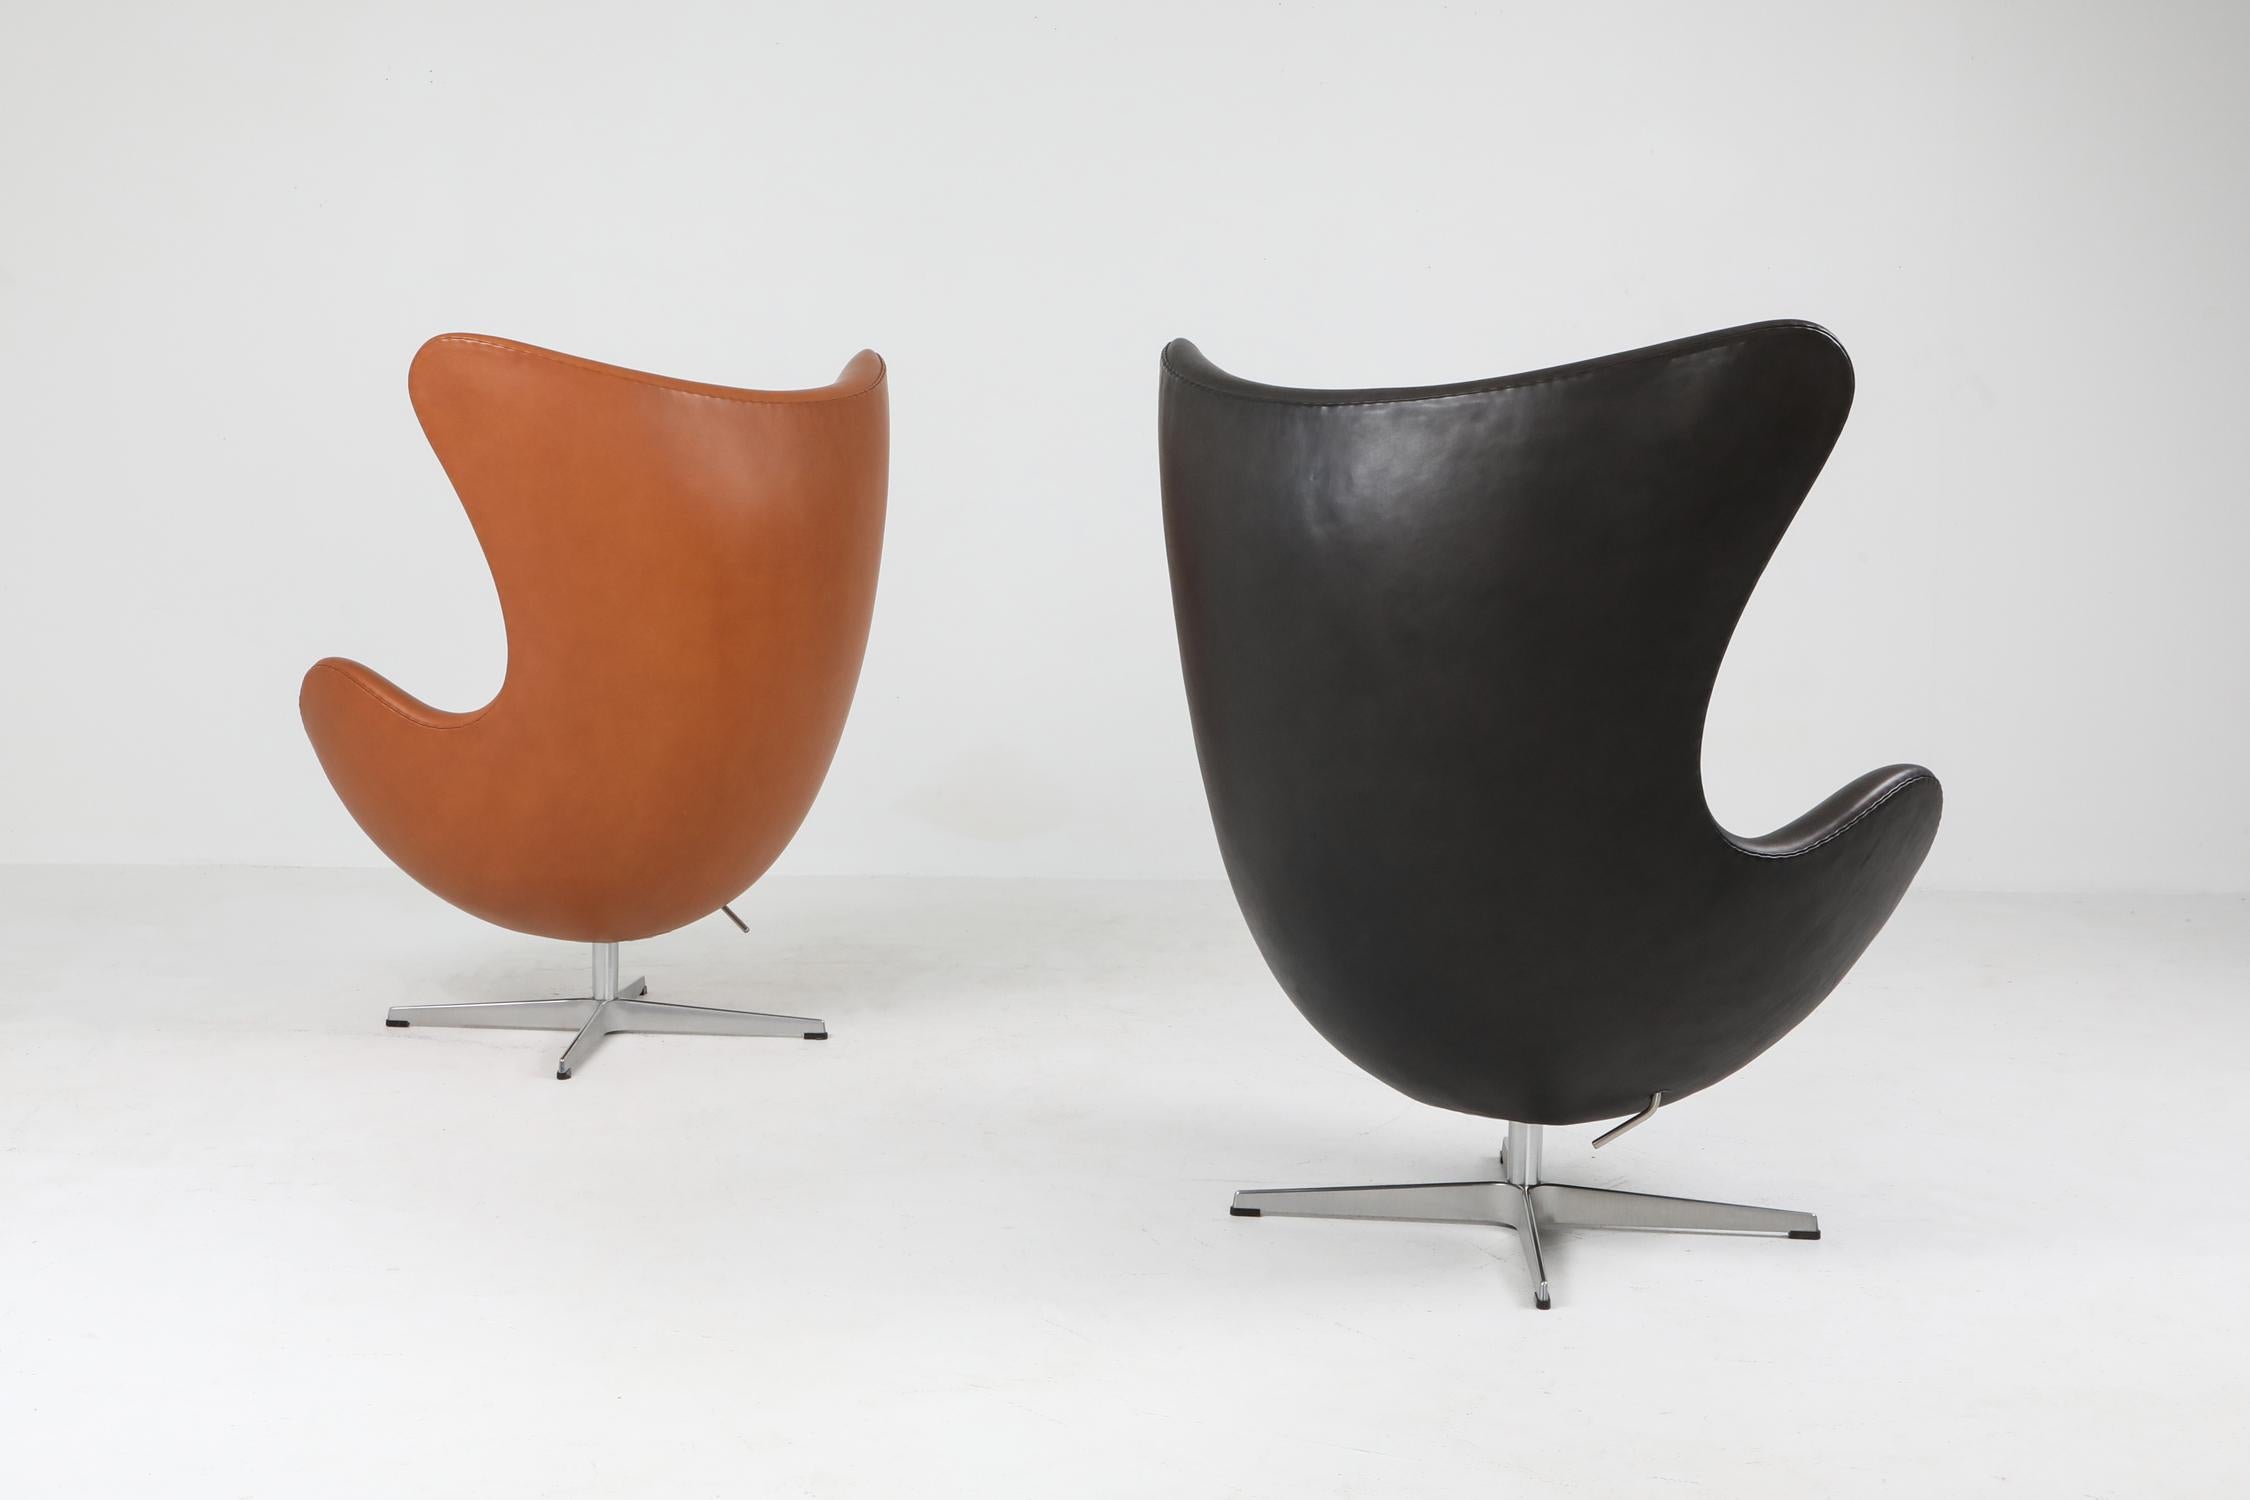 Black Leather Egg Chair by Arne Jacobsen for Fritz Hansen 1